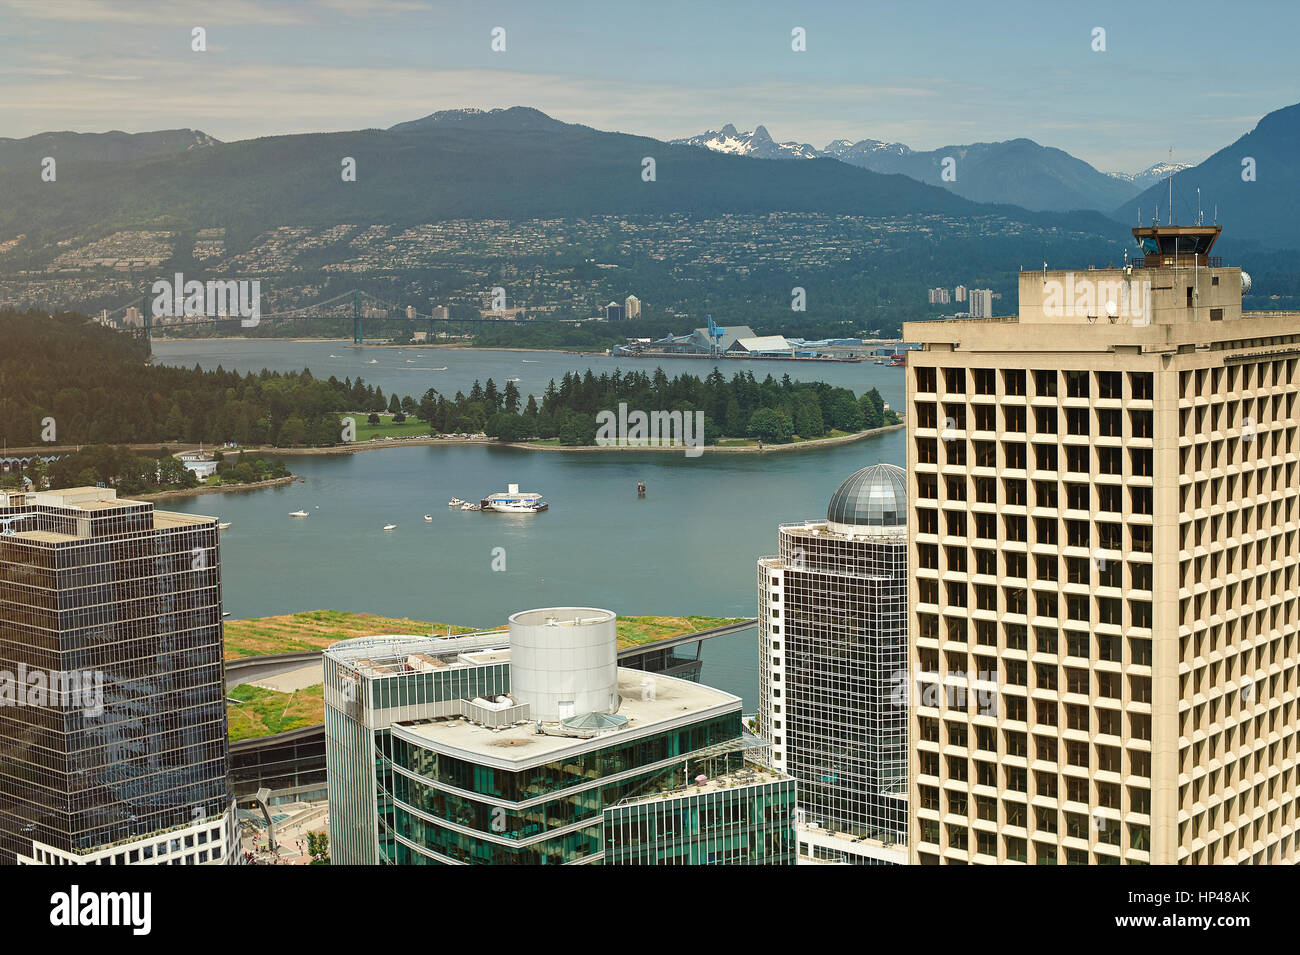 Paesaggio urbano del centro cittadino di Vancouver vista aerea sulla baia. Edificio urbano in Canada vista panoramica Foto Stock